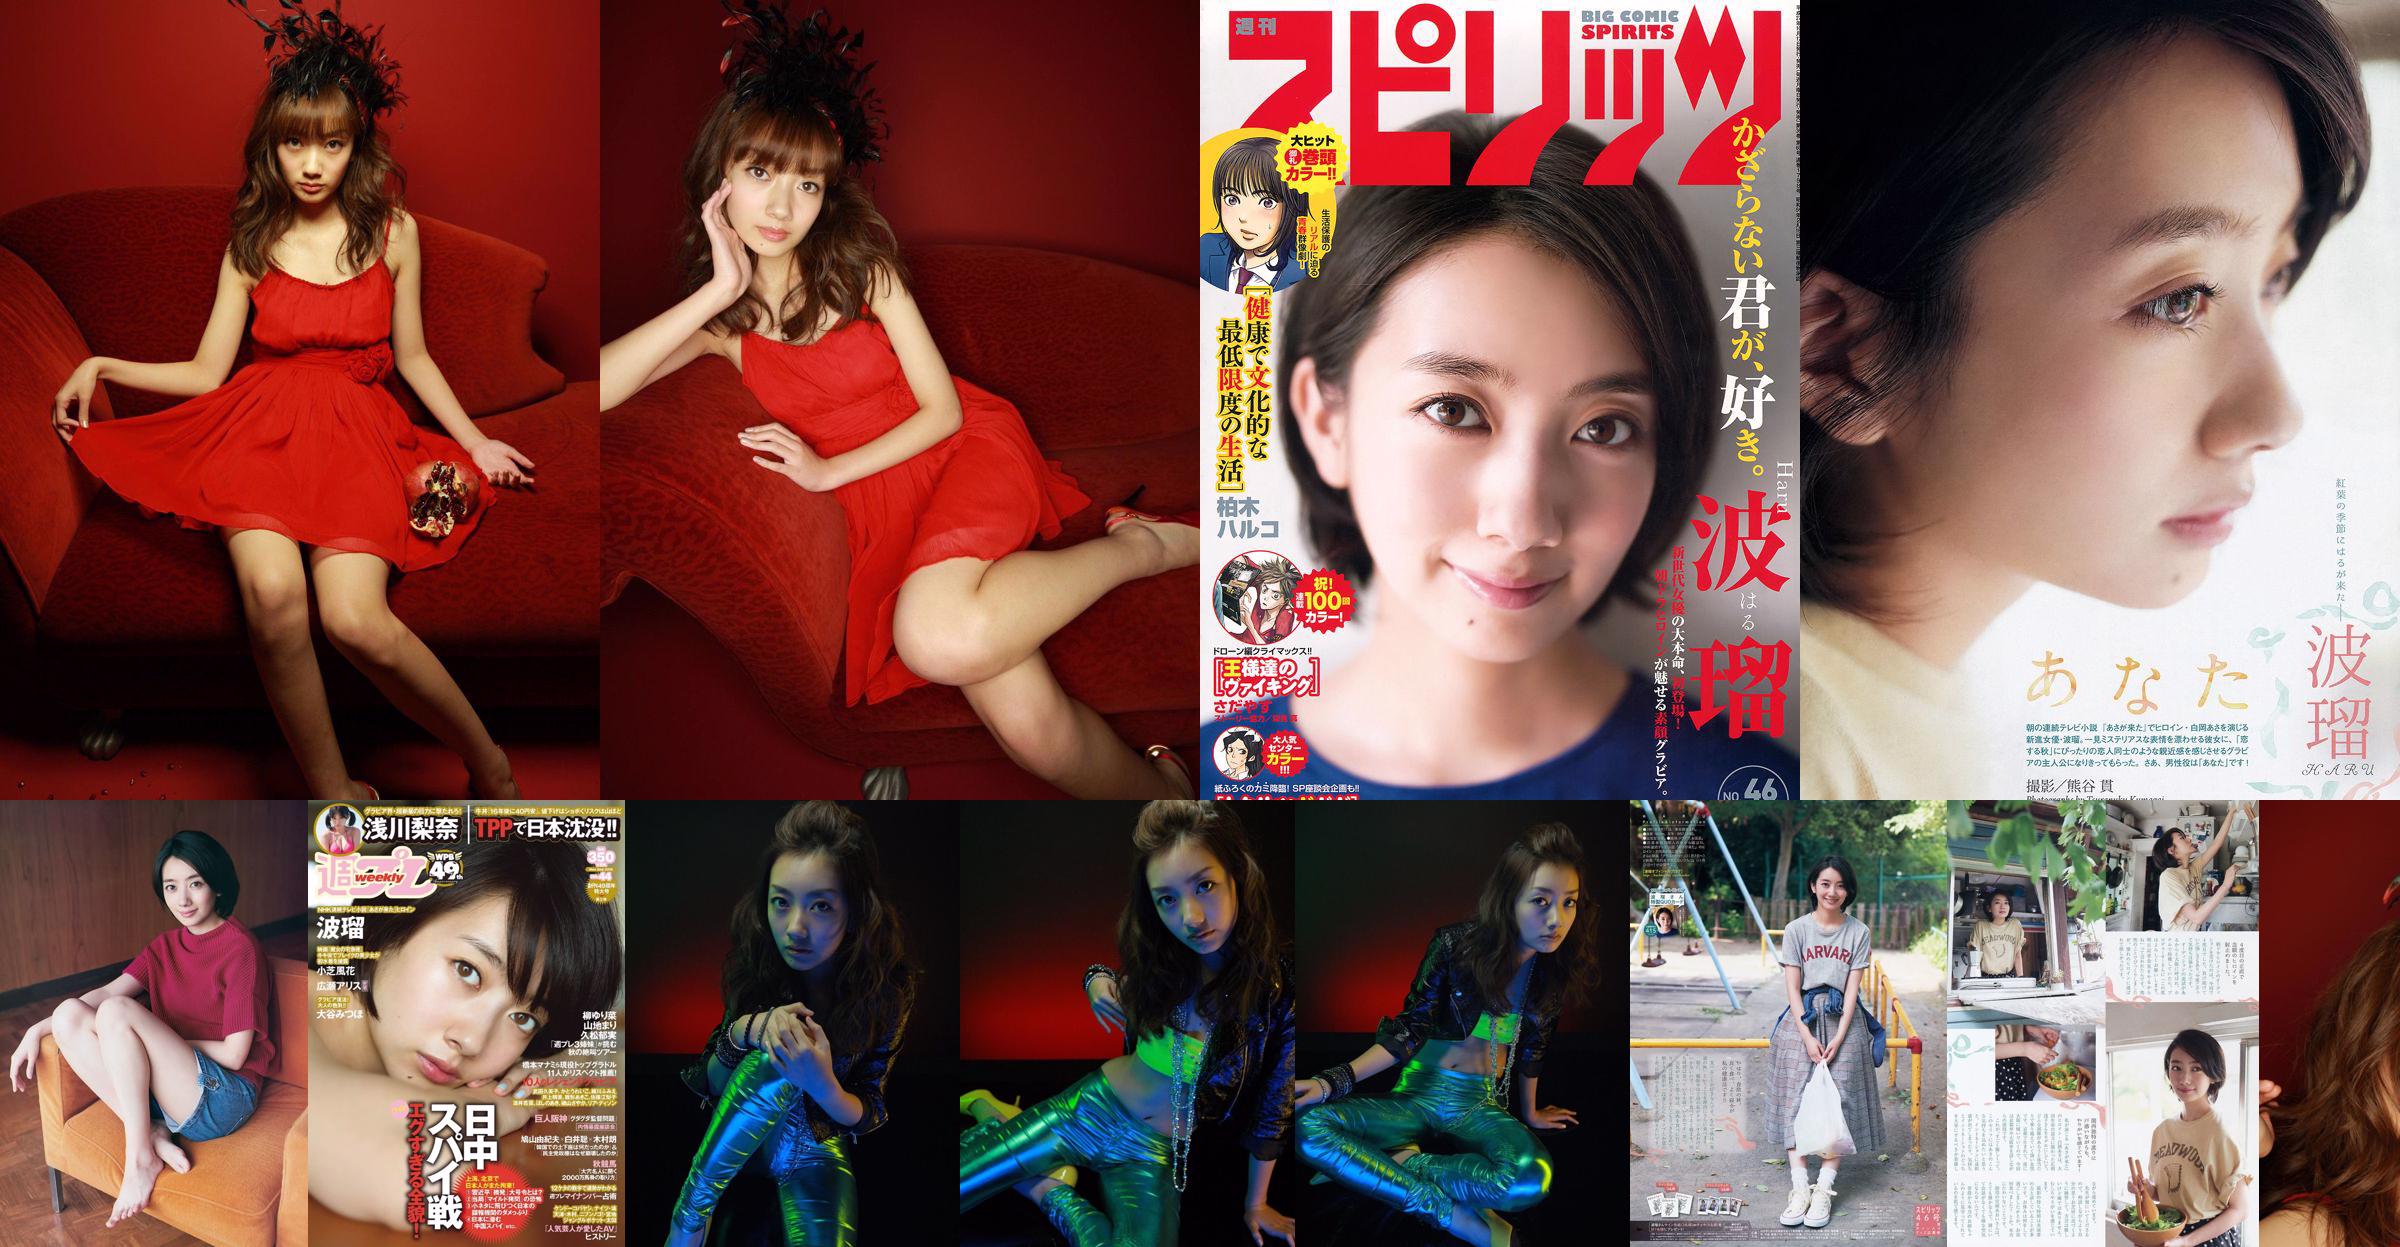 [Weekly Big Comic Spirits] Boru 2015 № 46 Photo Magazine No.78a235 Страница 1